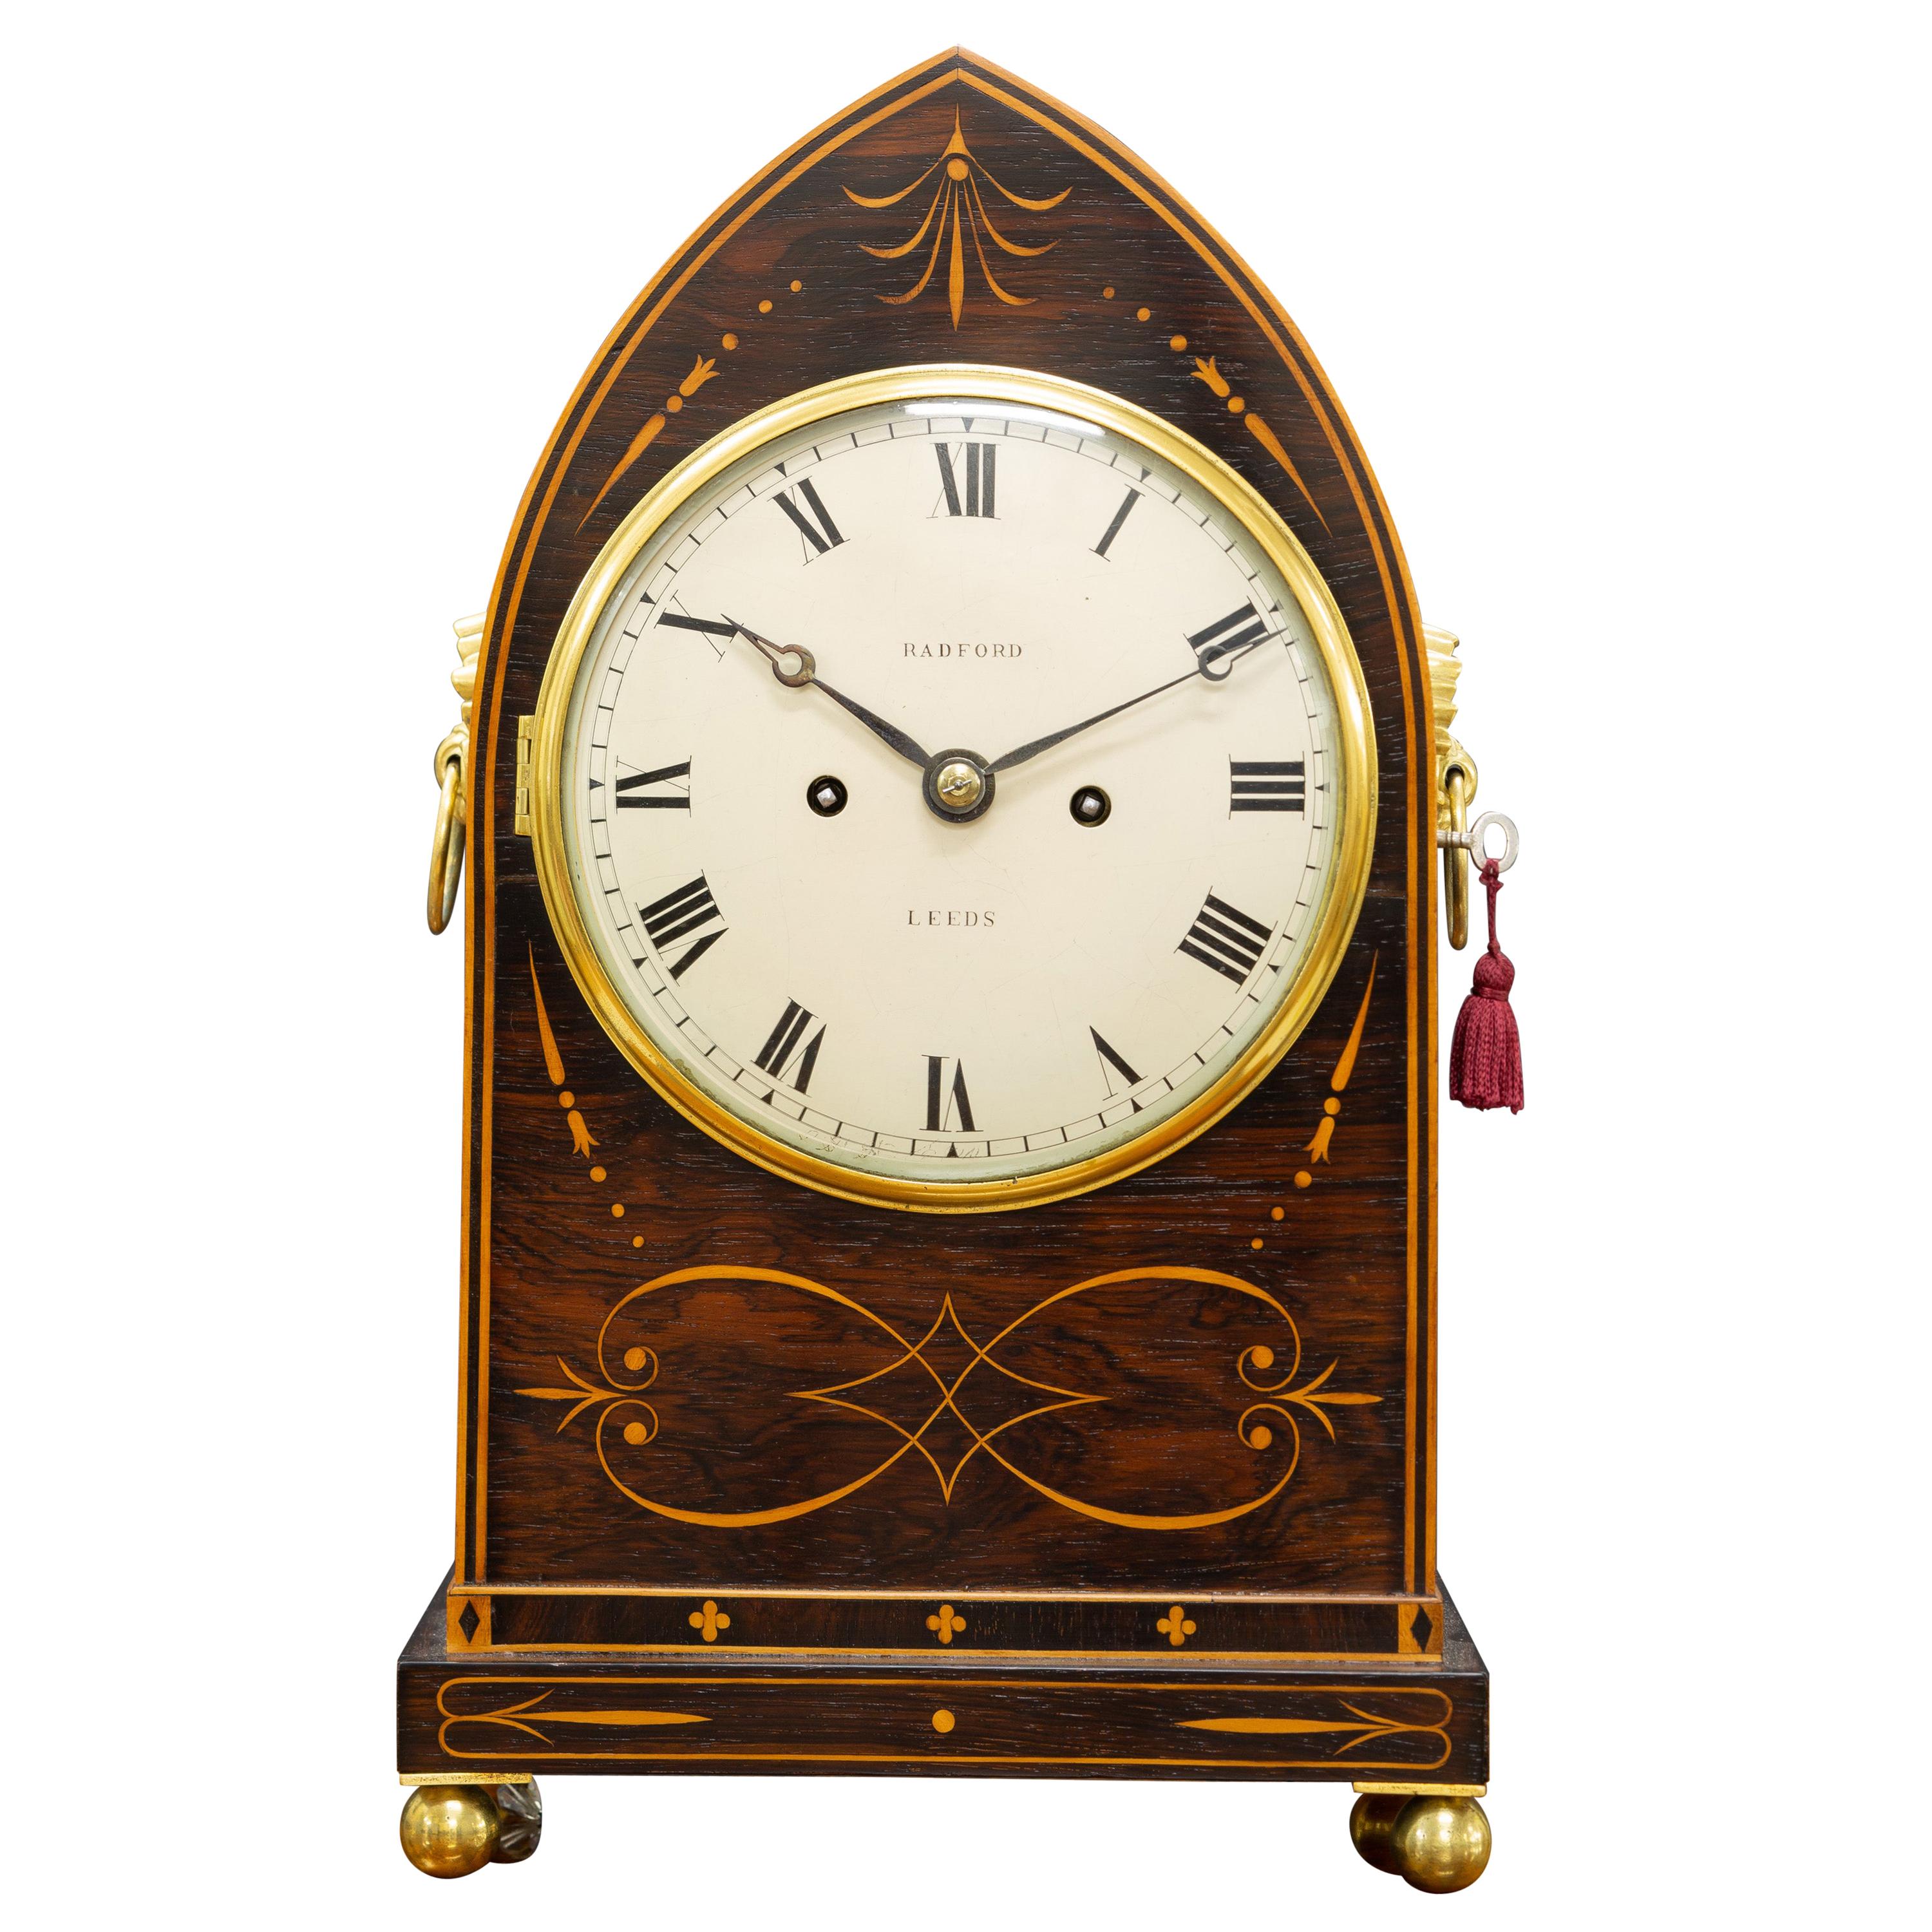 Regency Rosewood Bracket Clock by William Radford, Leeds